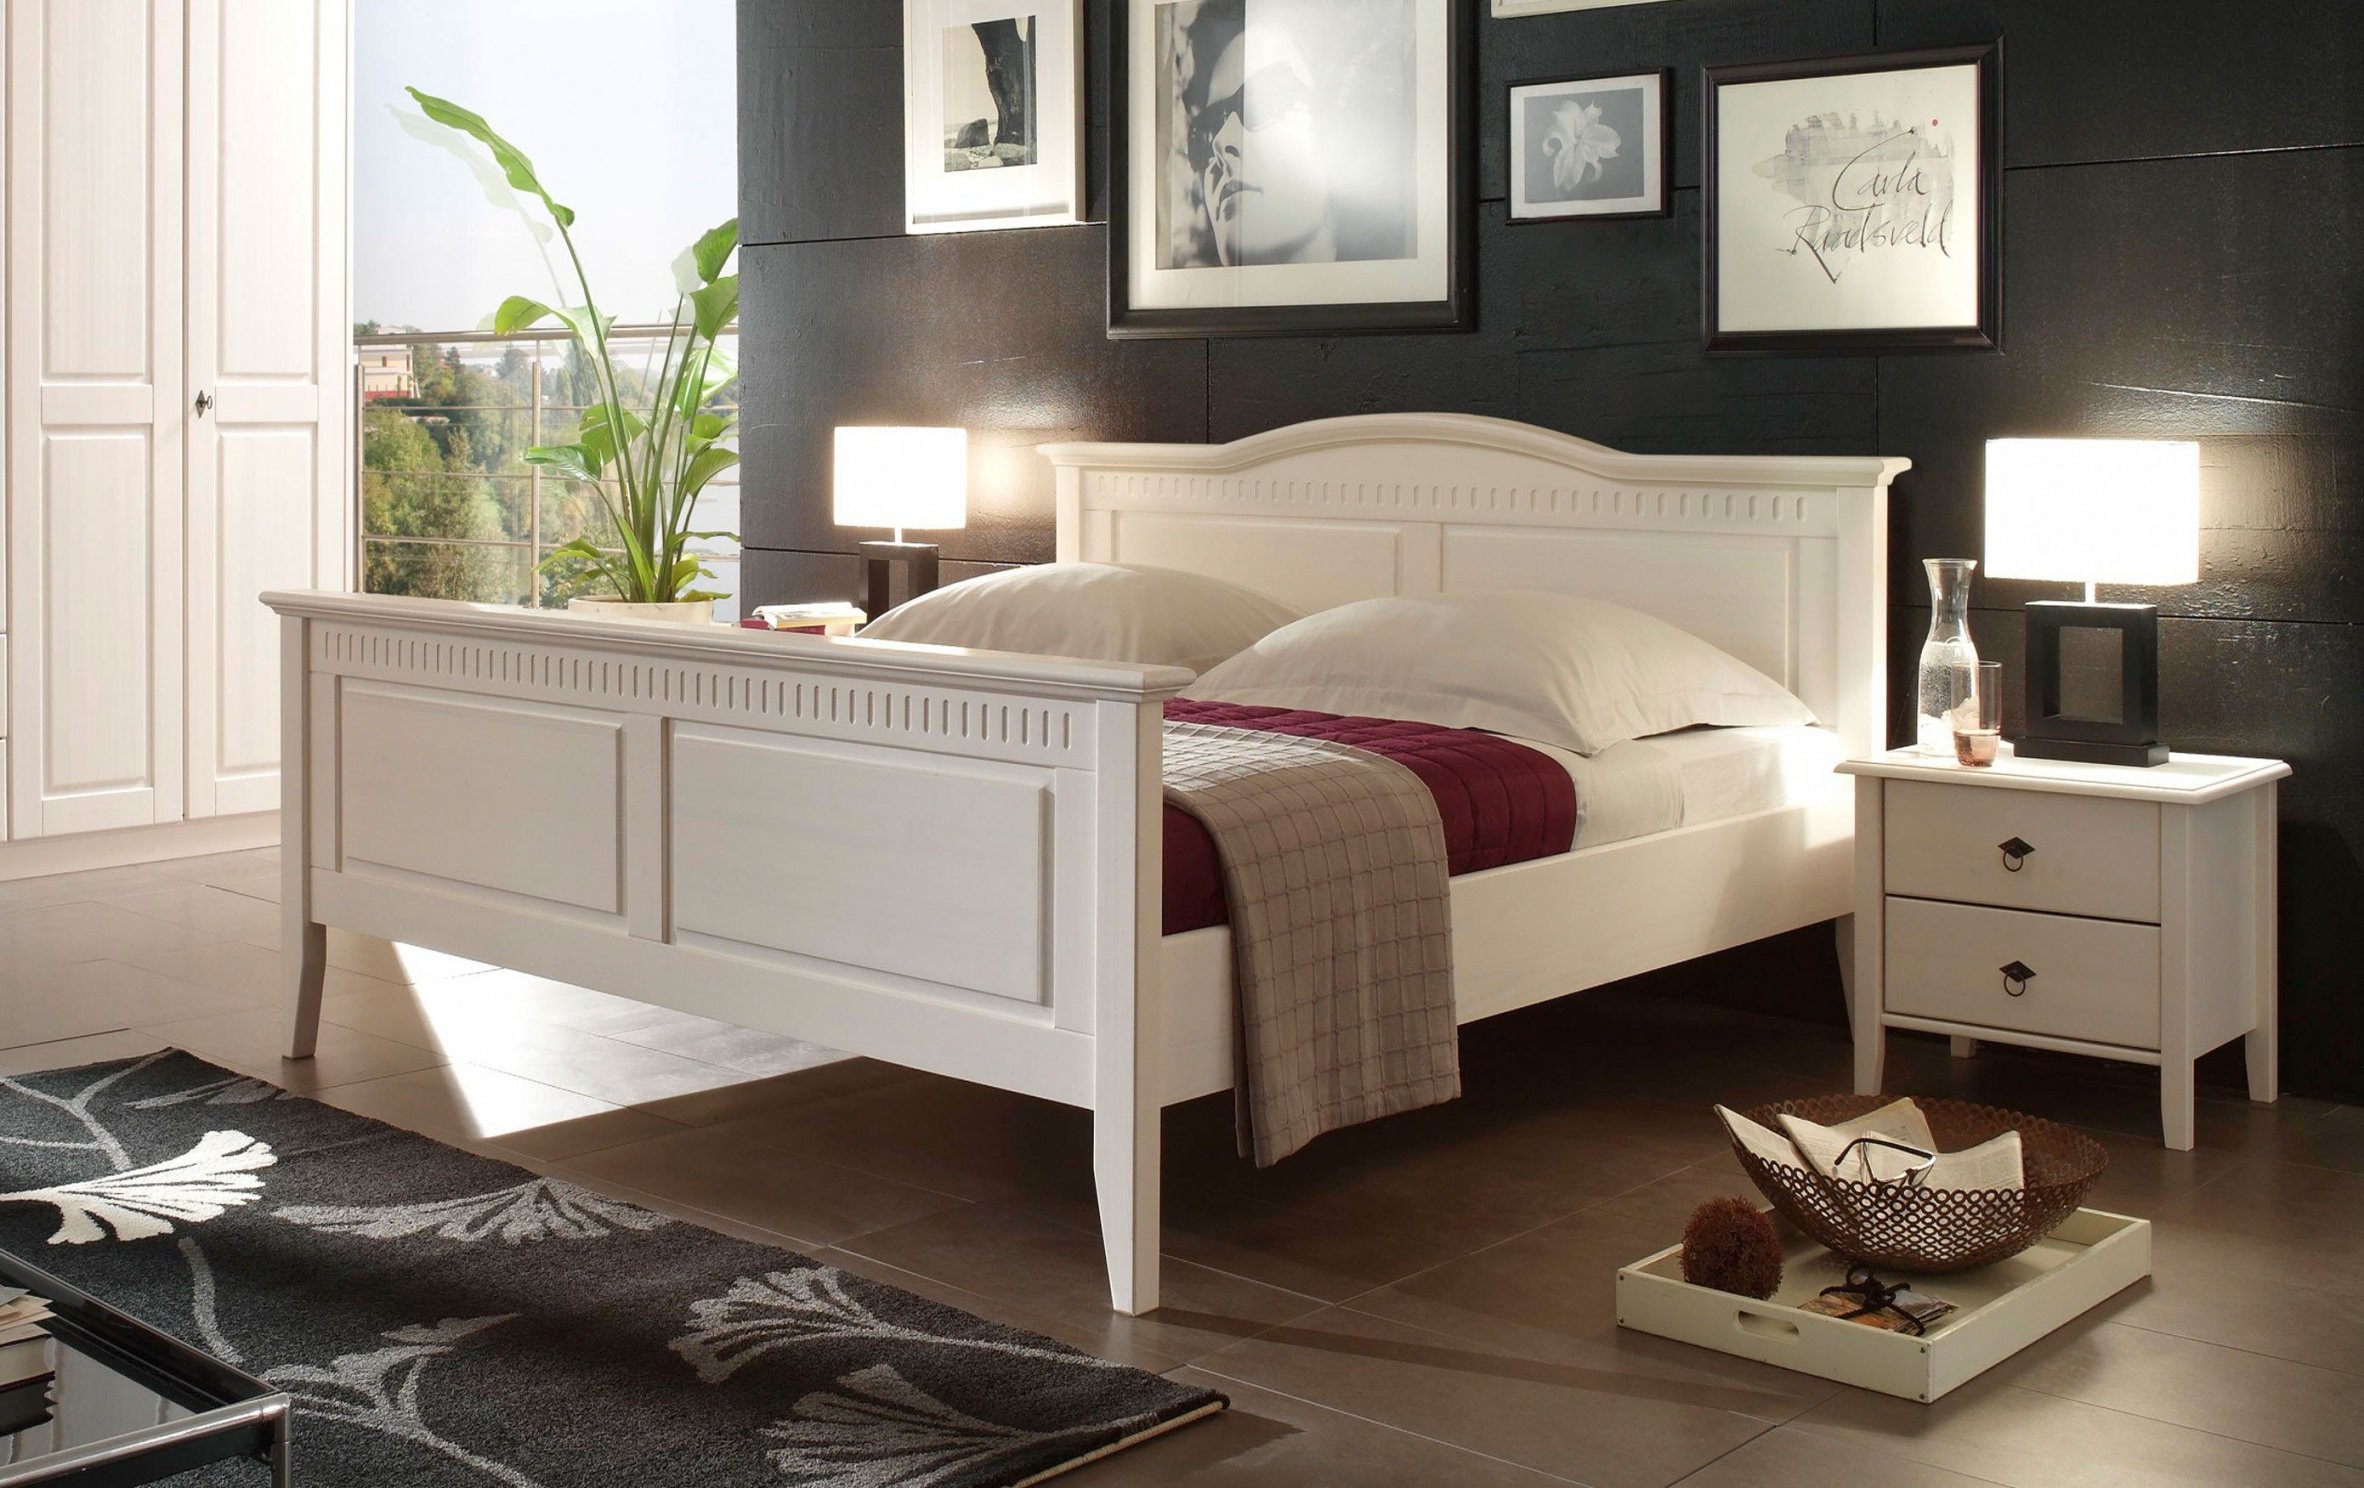 Bozen Ii Von Forestdream Bett Weiß Liegefläche 180X200 Cm  Möbel von Bett Landhausstil Weiß 180X200 Bild